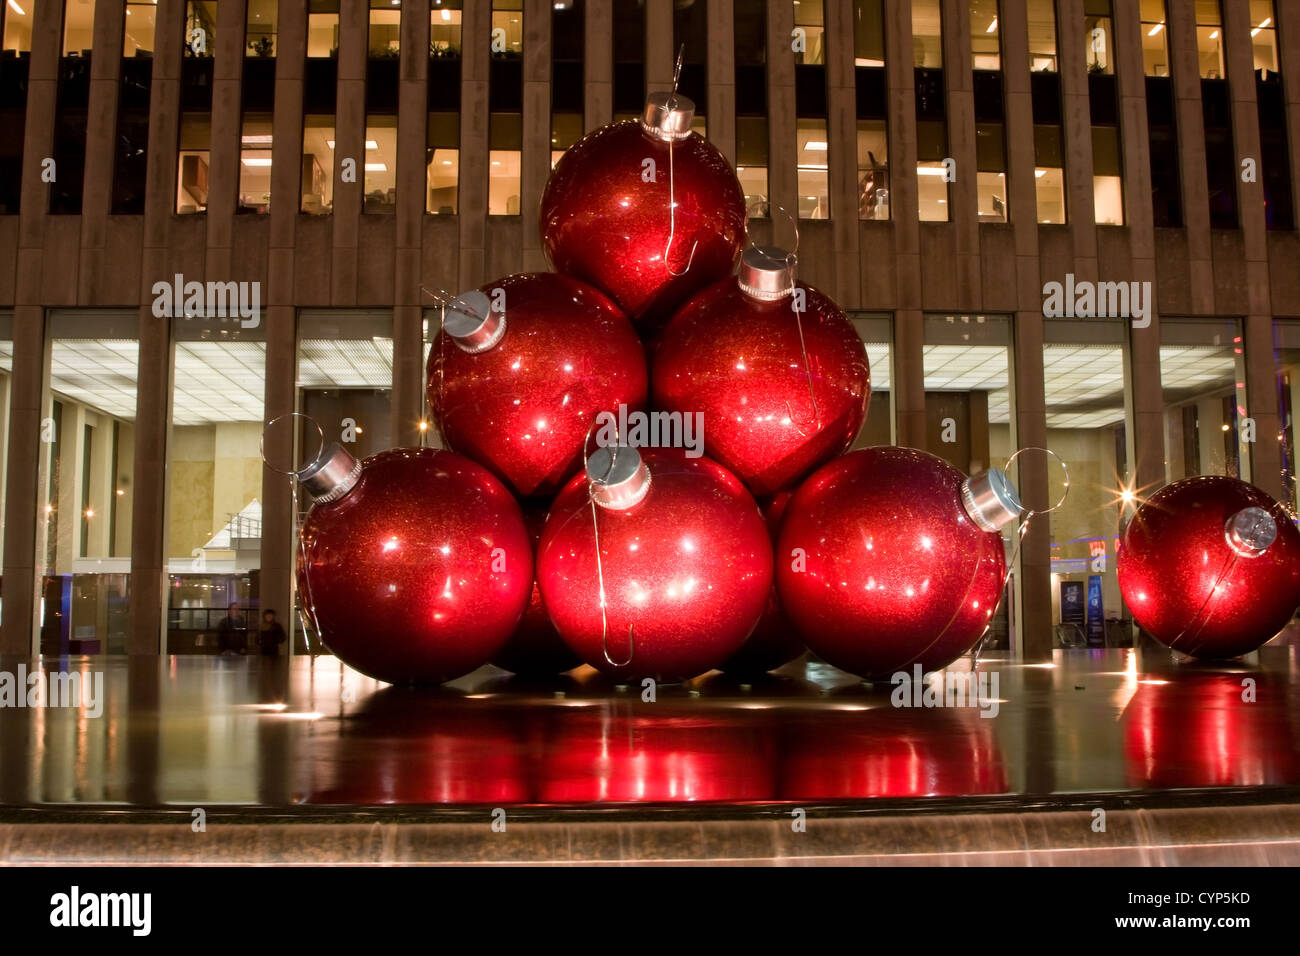 Palle Di Natale Grandi.Grandi Palle Rosse Come Ornamenti Per L Albero Di Natale Come Un Arte Mostra Sulla 6th Avenue In New York City Foto Stock Alamy